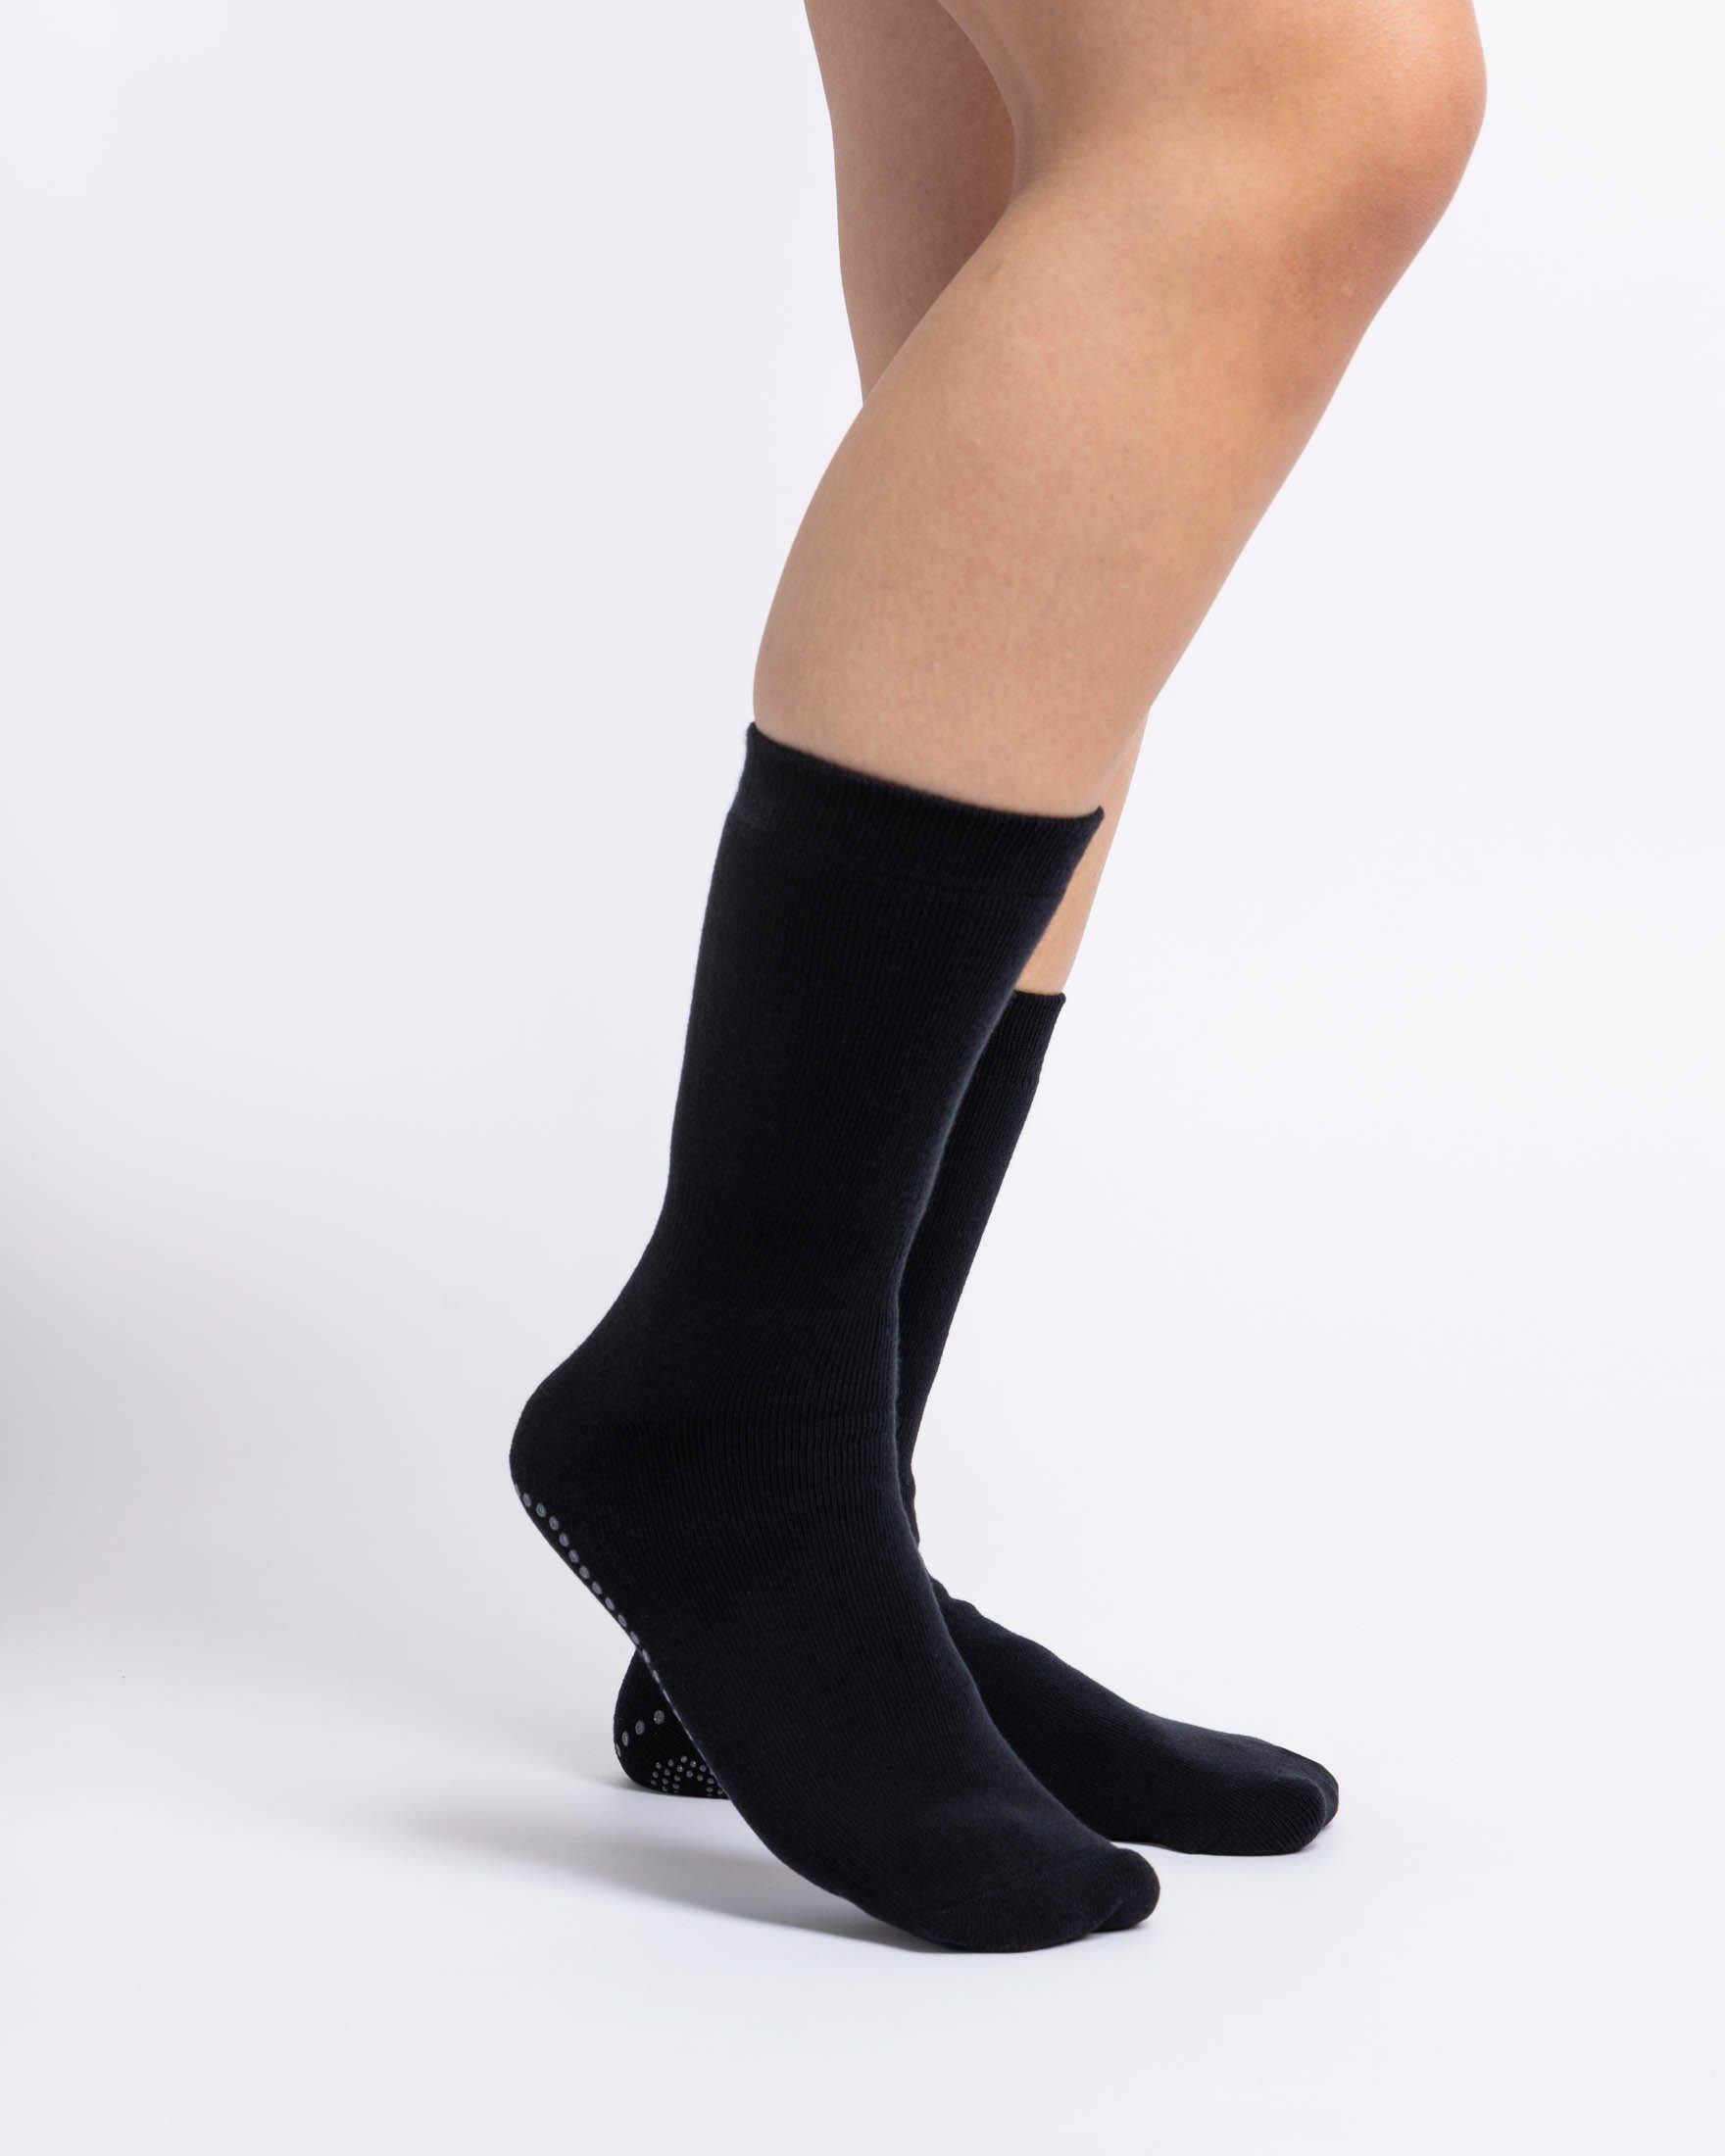 SNOCKS ABS-Socken Anti-Rutsch Socken & (SNOCKS) Damen Bio-Baumwolle, Schwarz Anti-Rutsch-Noppen aus Herren Design (2-Paar) in süßem